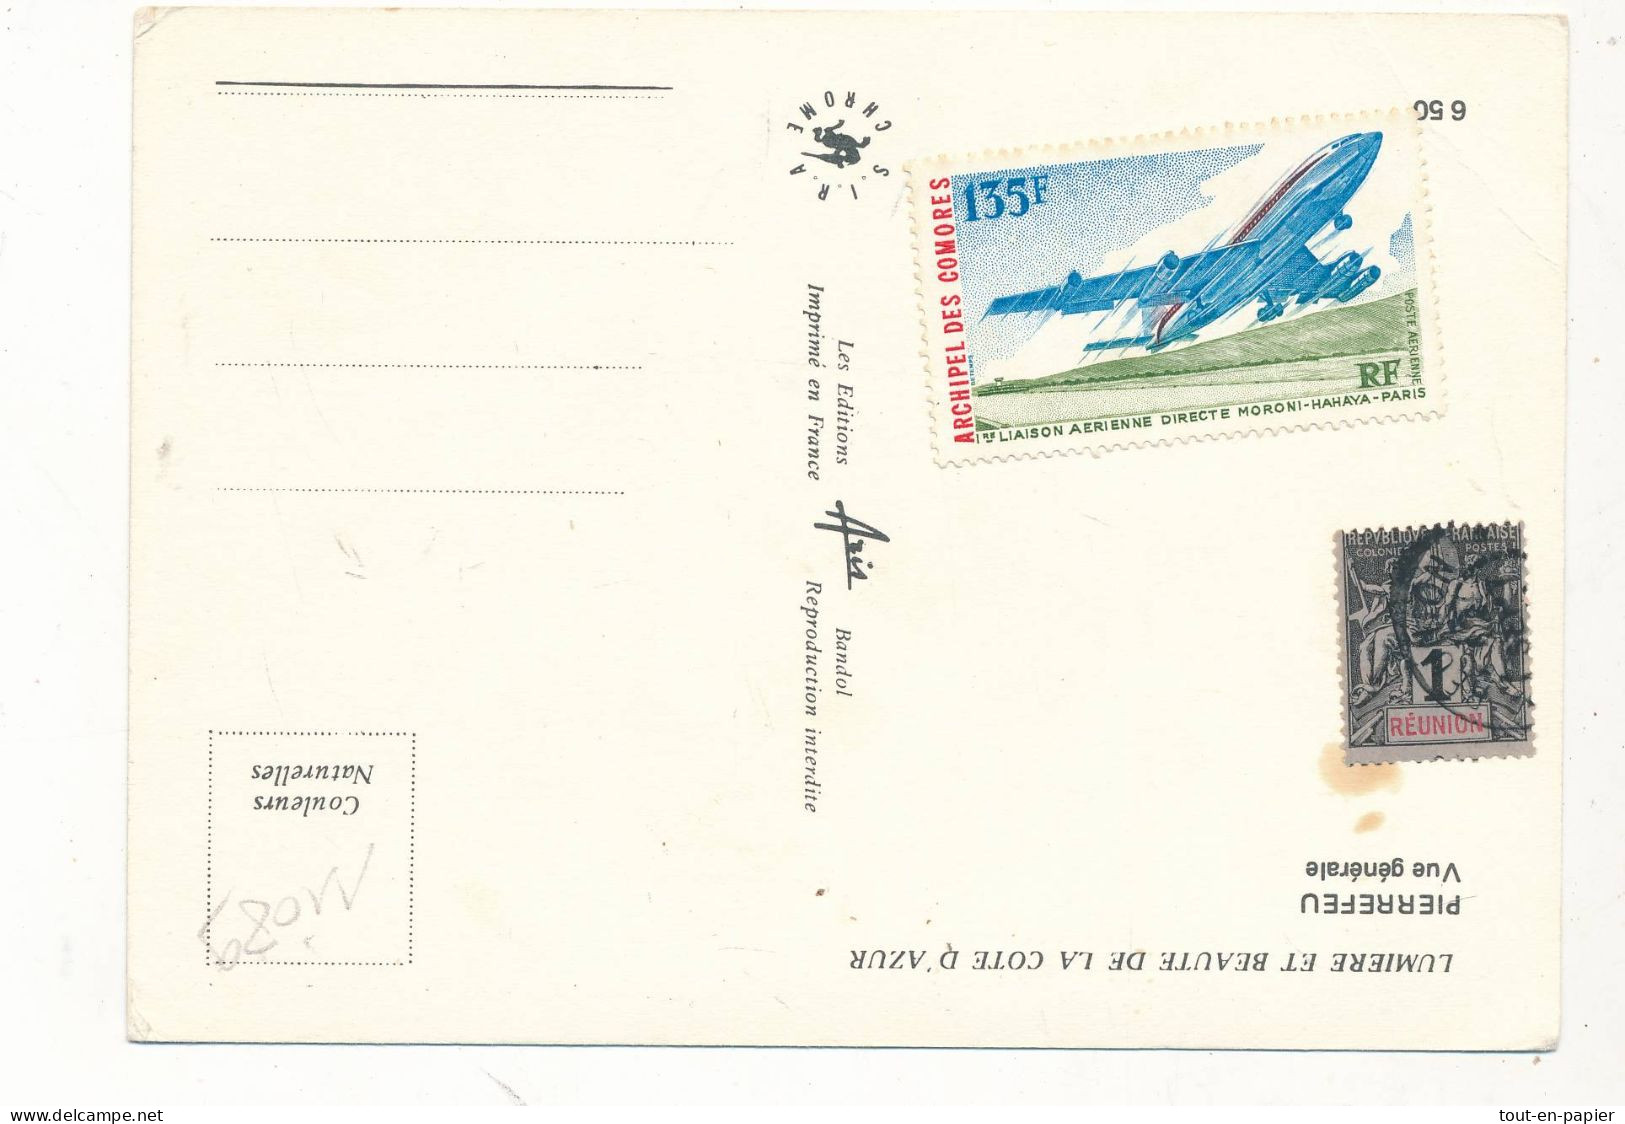 1 Timbre Oblitéré Réunion  Type Sage Et Un Timbre Non Oblitéré  Archipel Des Comores Collés Sur Carte Postale - Used Stamps